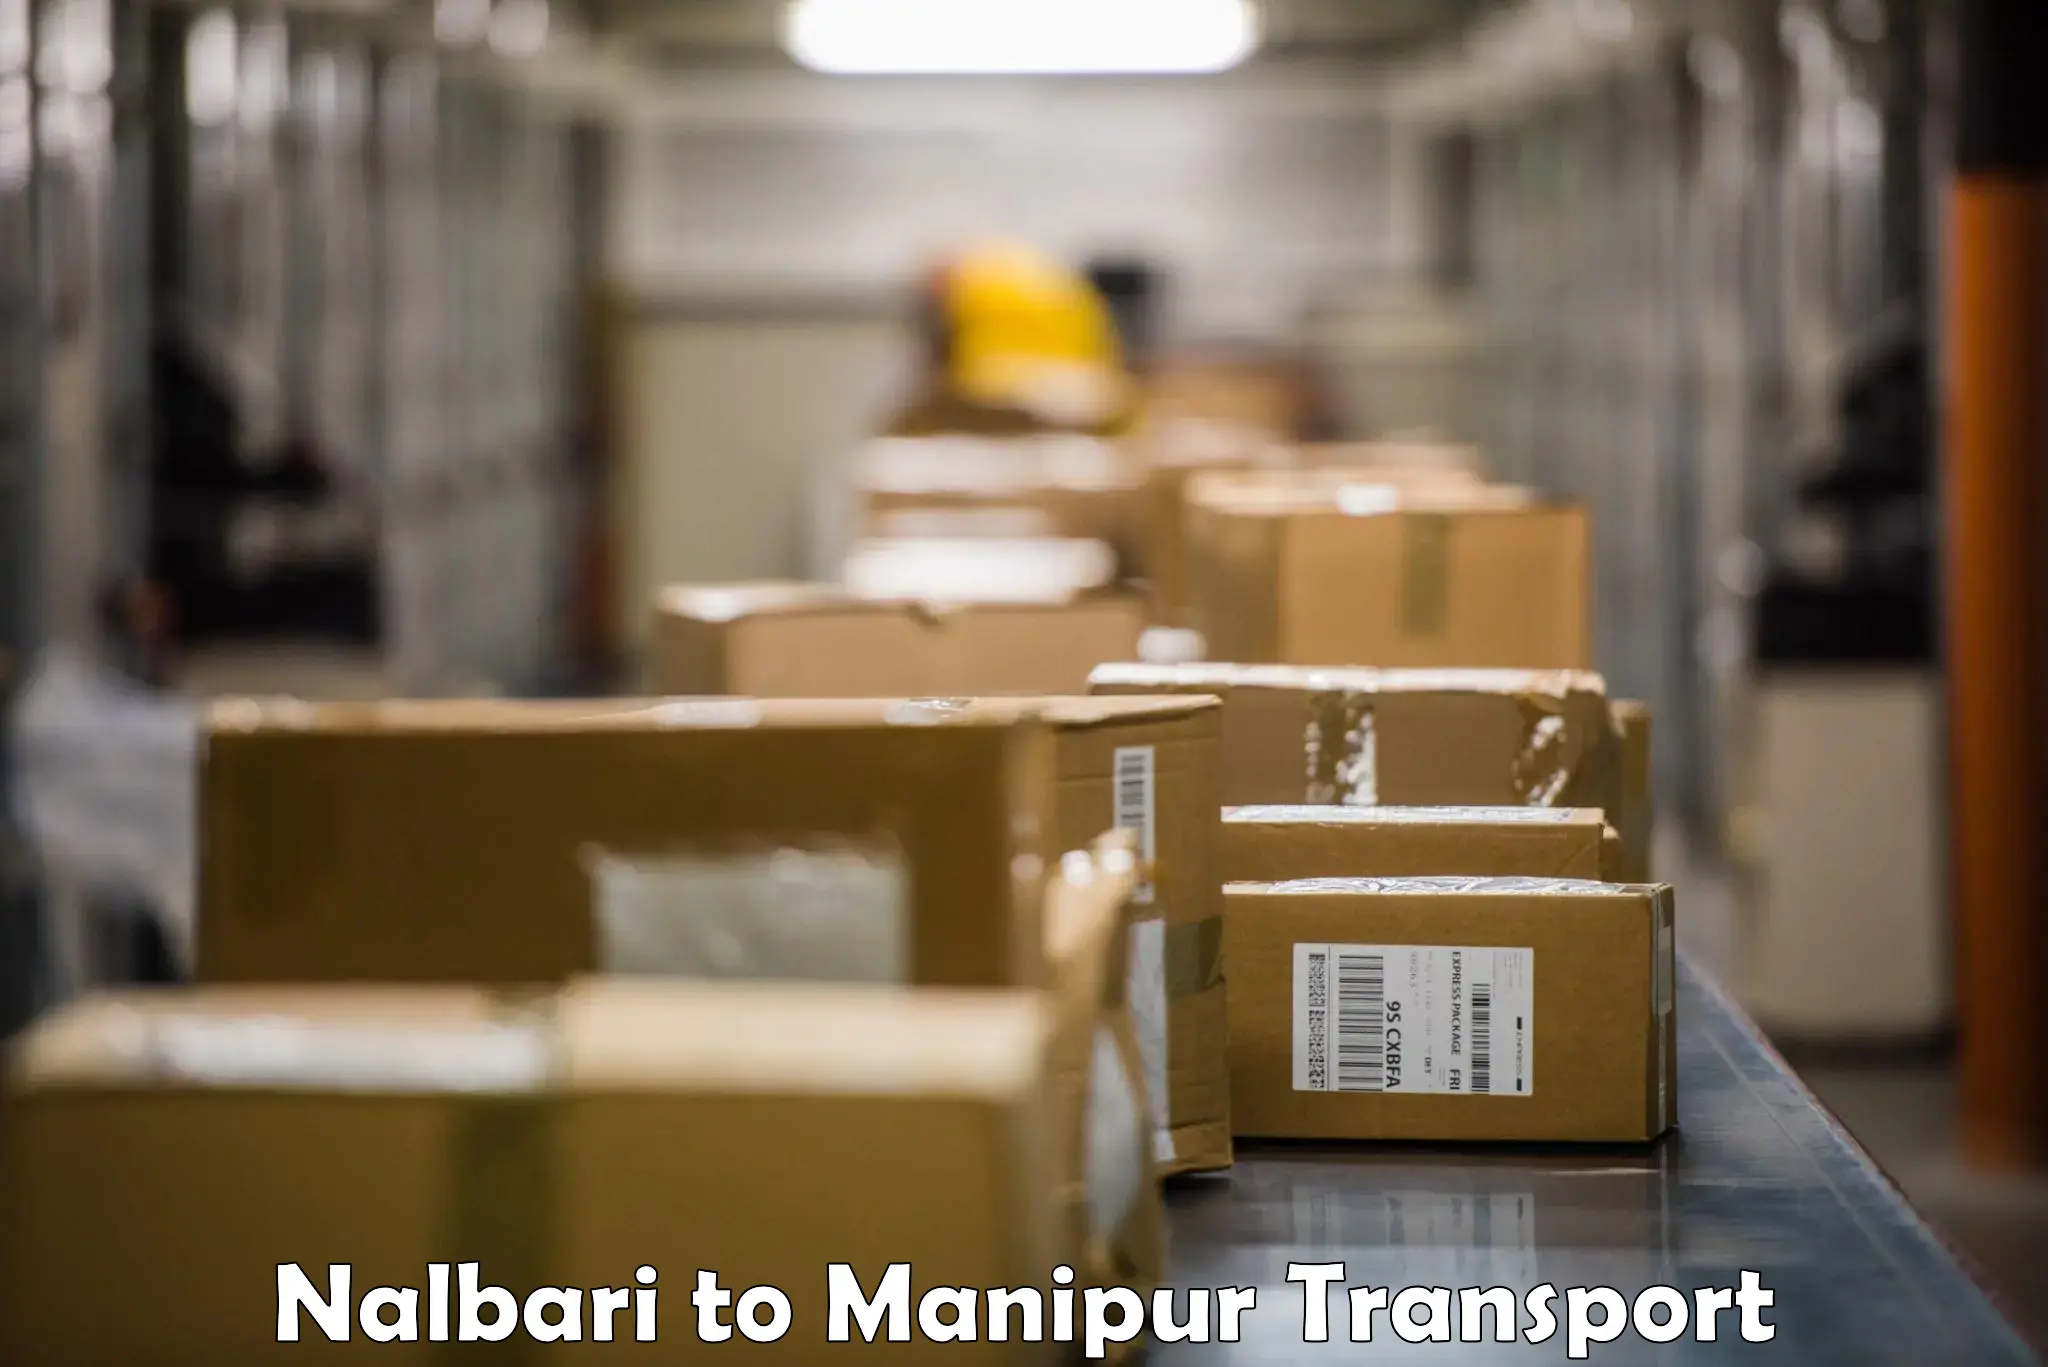 Sending bike to another city Nalbari to Manipur